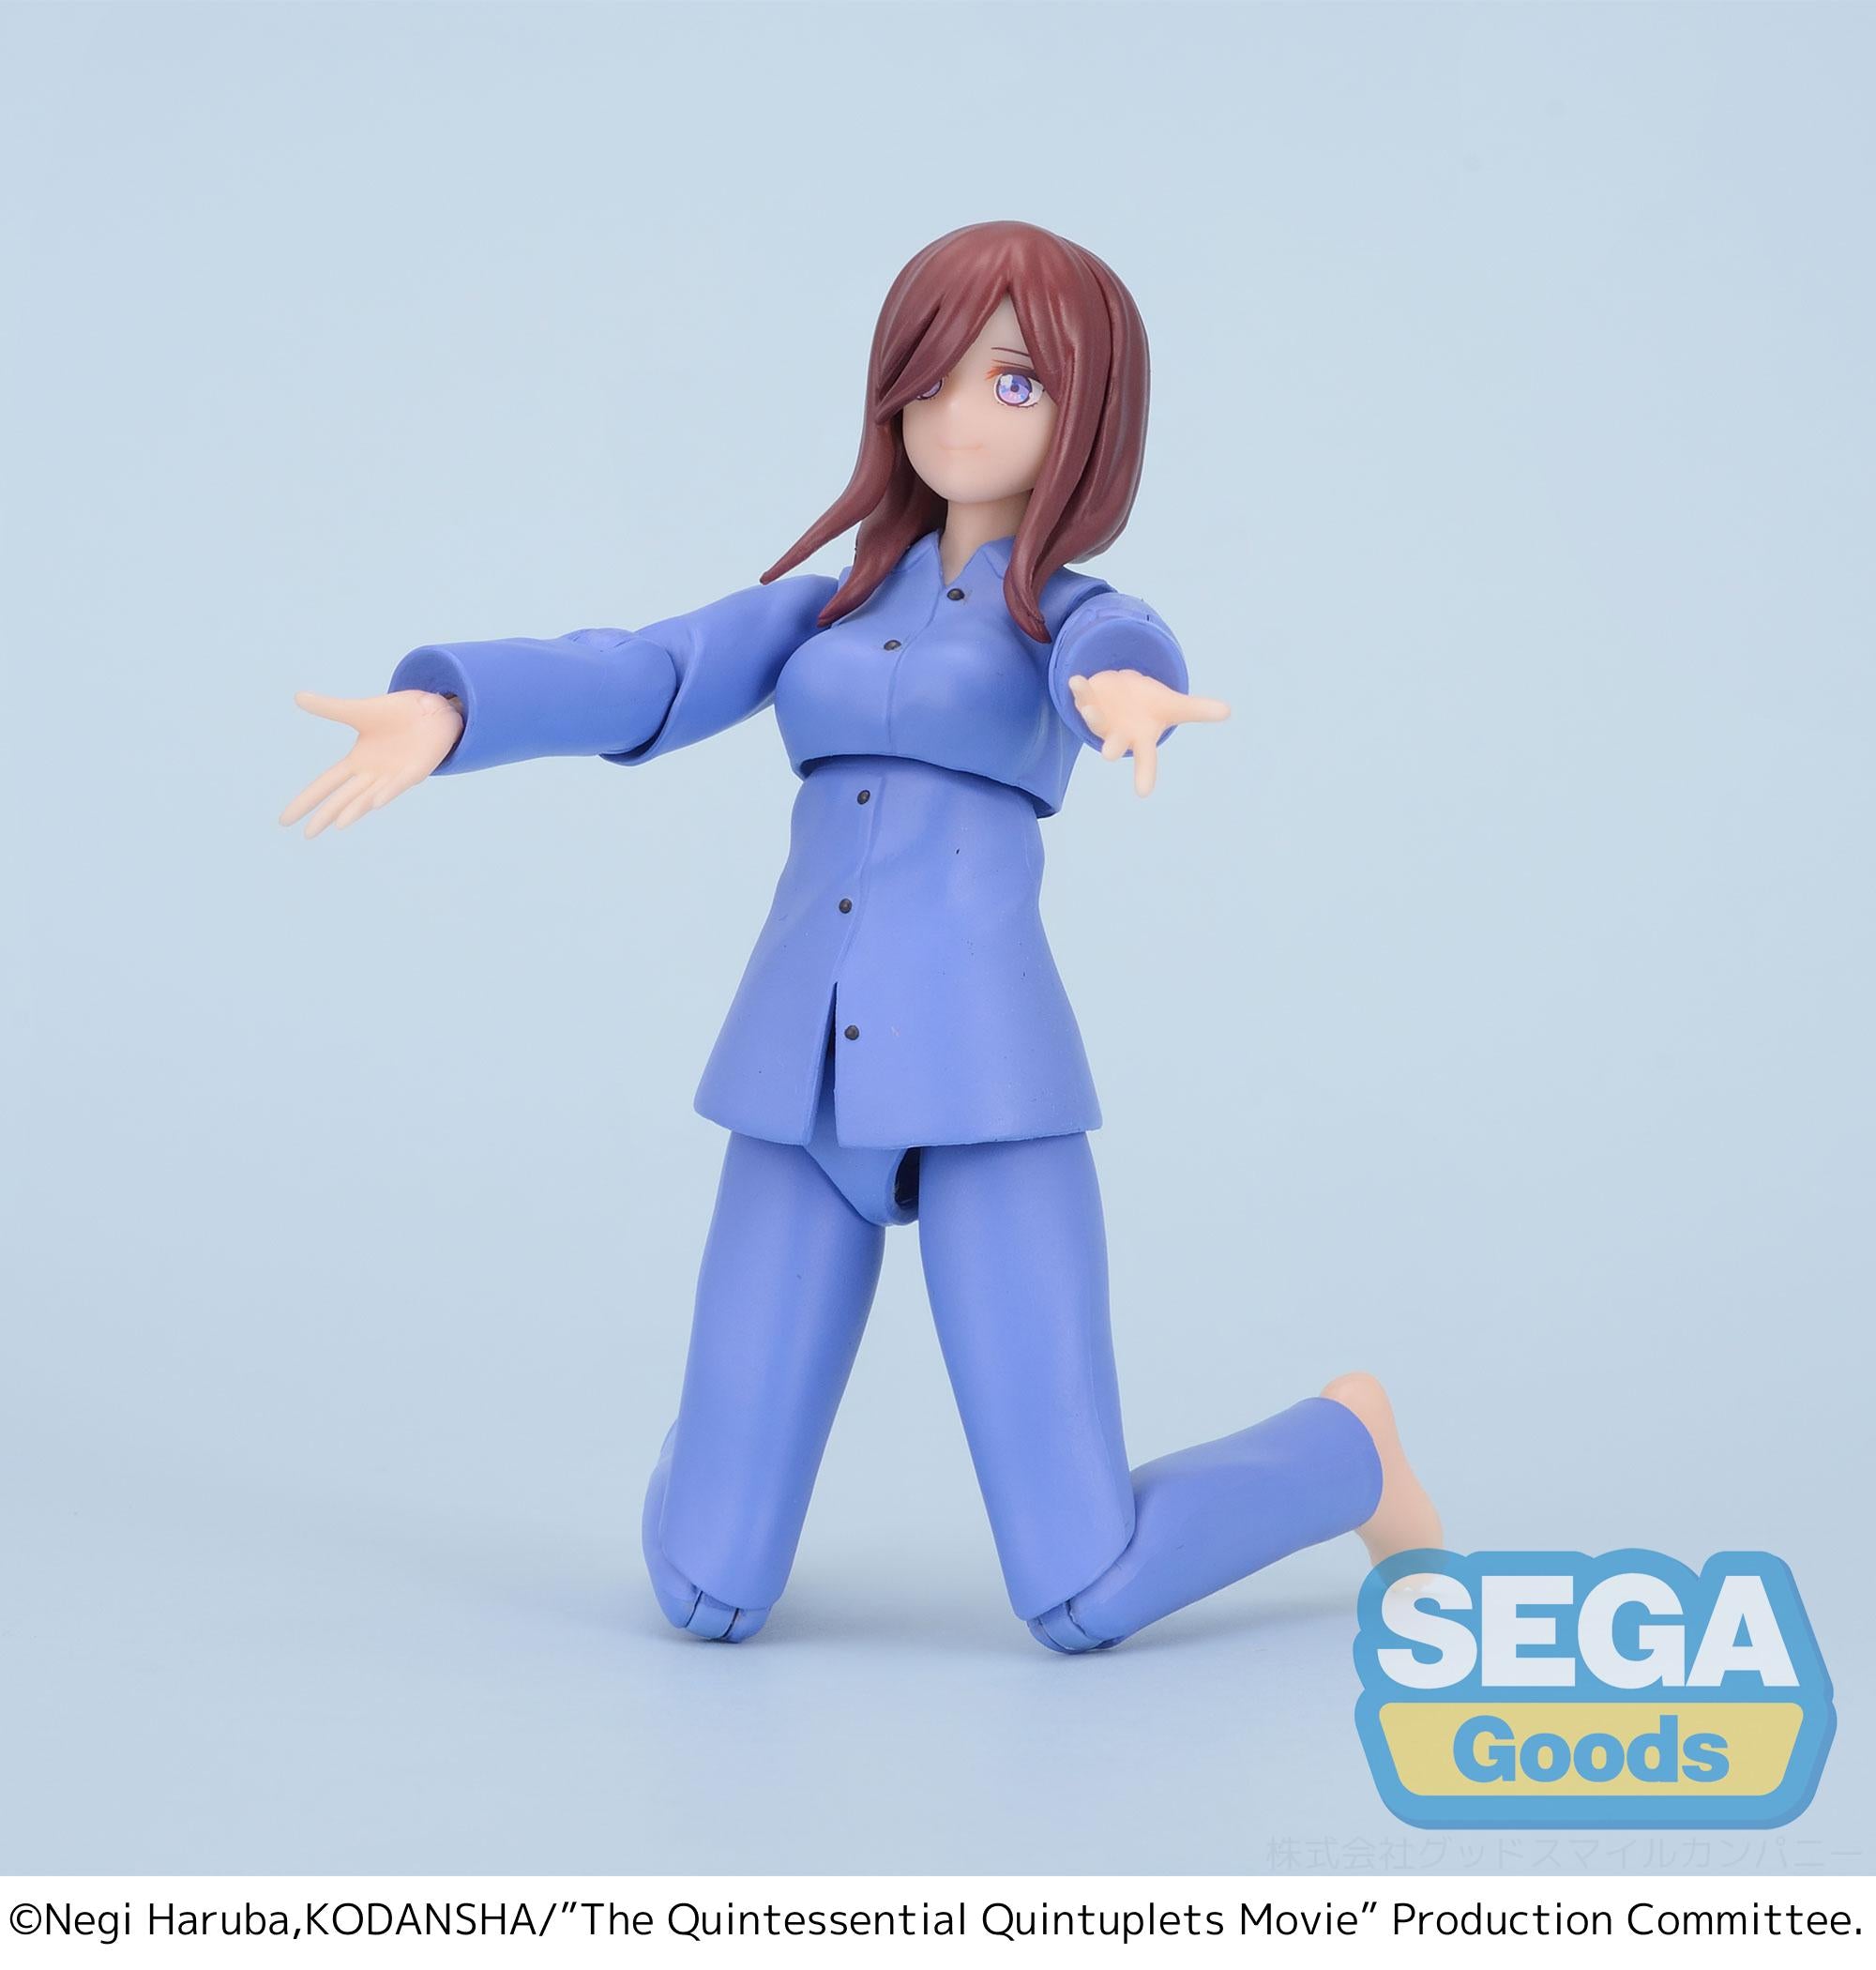 Sega Figures Movingood: The Quintessential Quintuplets - Miku Nakano